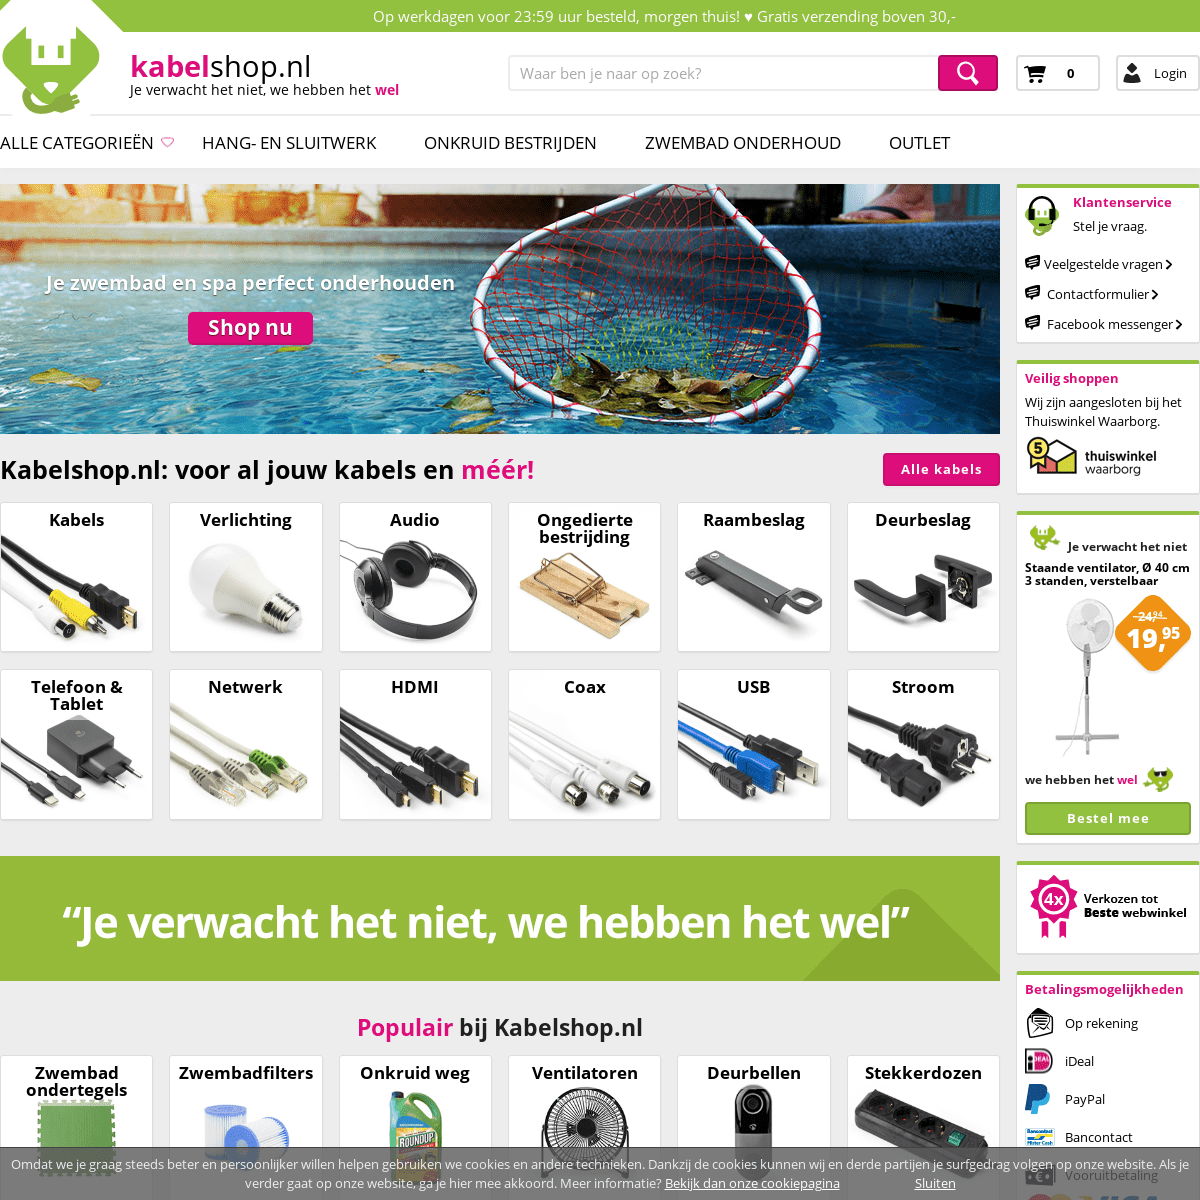 A complete backup of https://kabelshop.nl